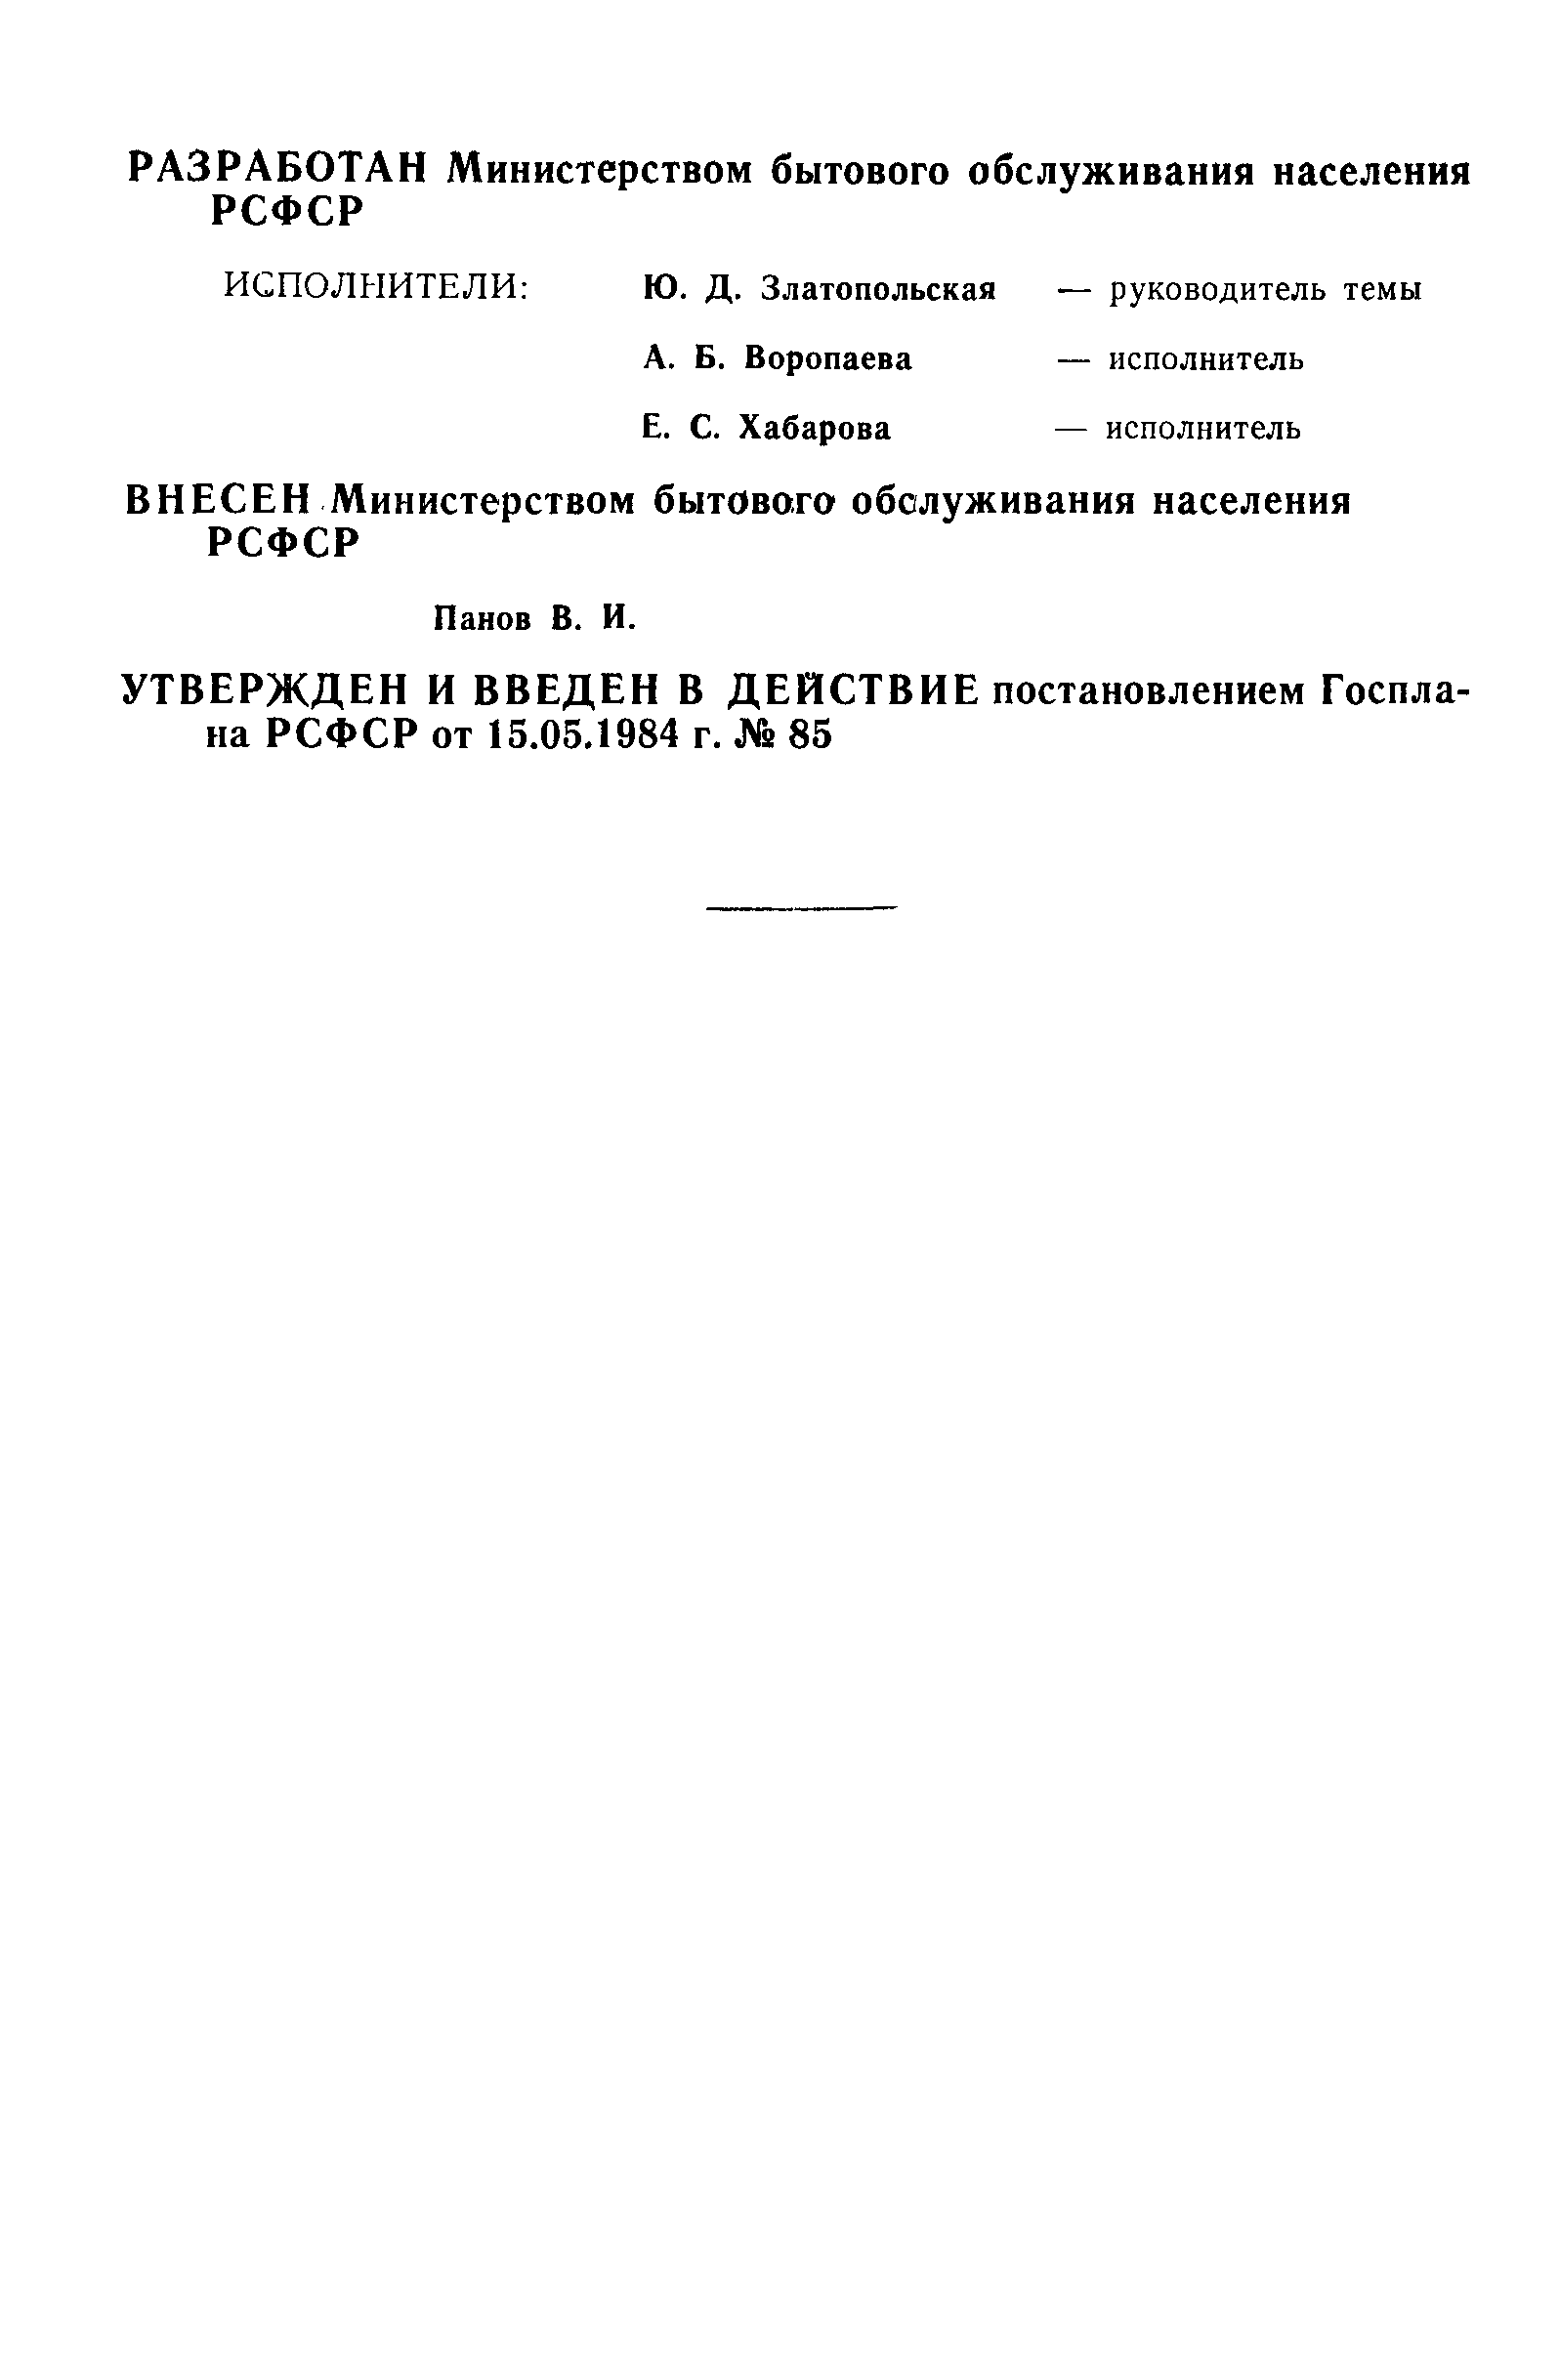 РСТ РСФСР 714-84